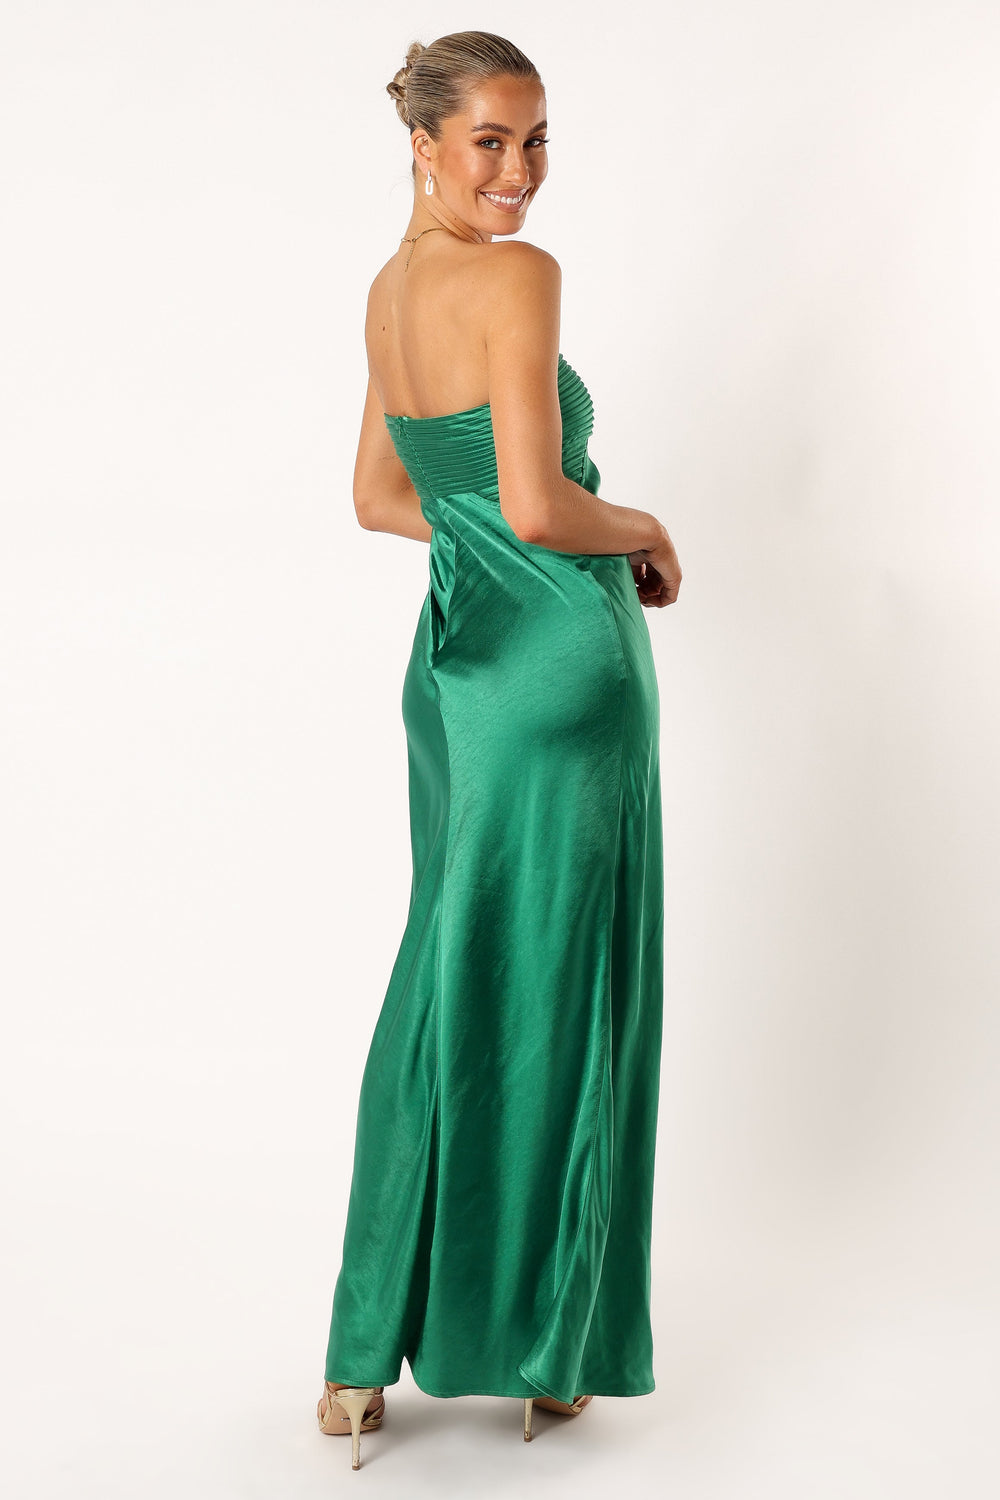 Petal and Pup USA DRESSES Adina Maxi Dress - Emerald